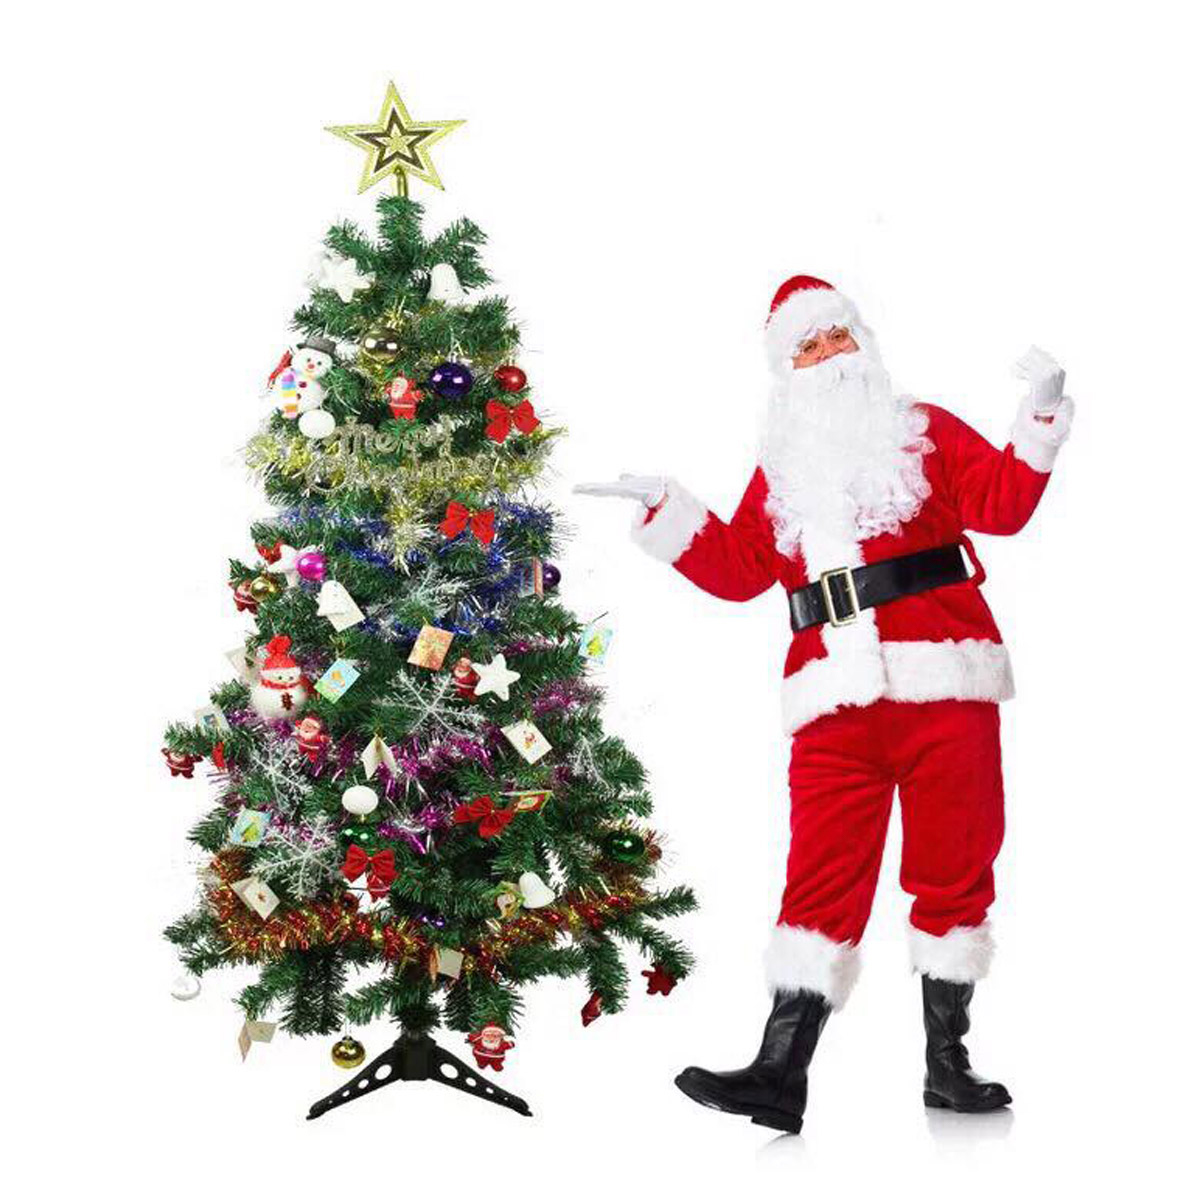 Cây thông Noel 1,6m trang trí cho mùa giáng sinh an lành tặng kèm phụ kiện đầy đủ - Cây thông Noel full phụ kiện